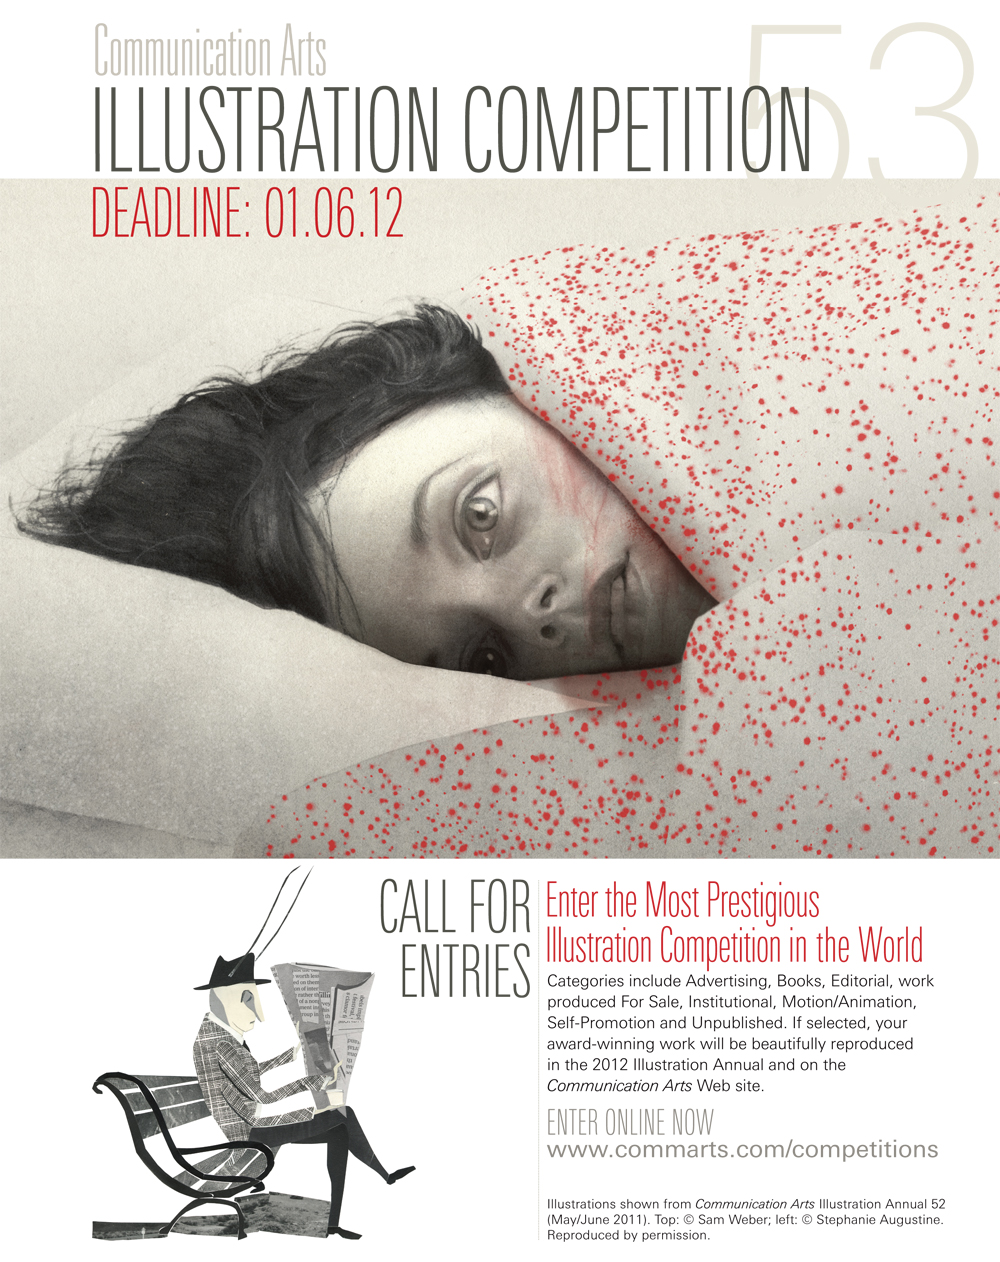 Communication Arts magazine: Illustration Competition 2012